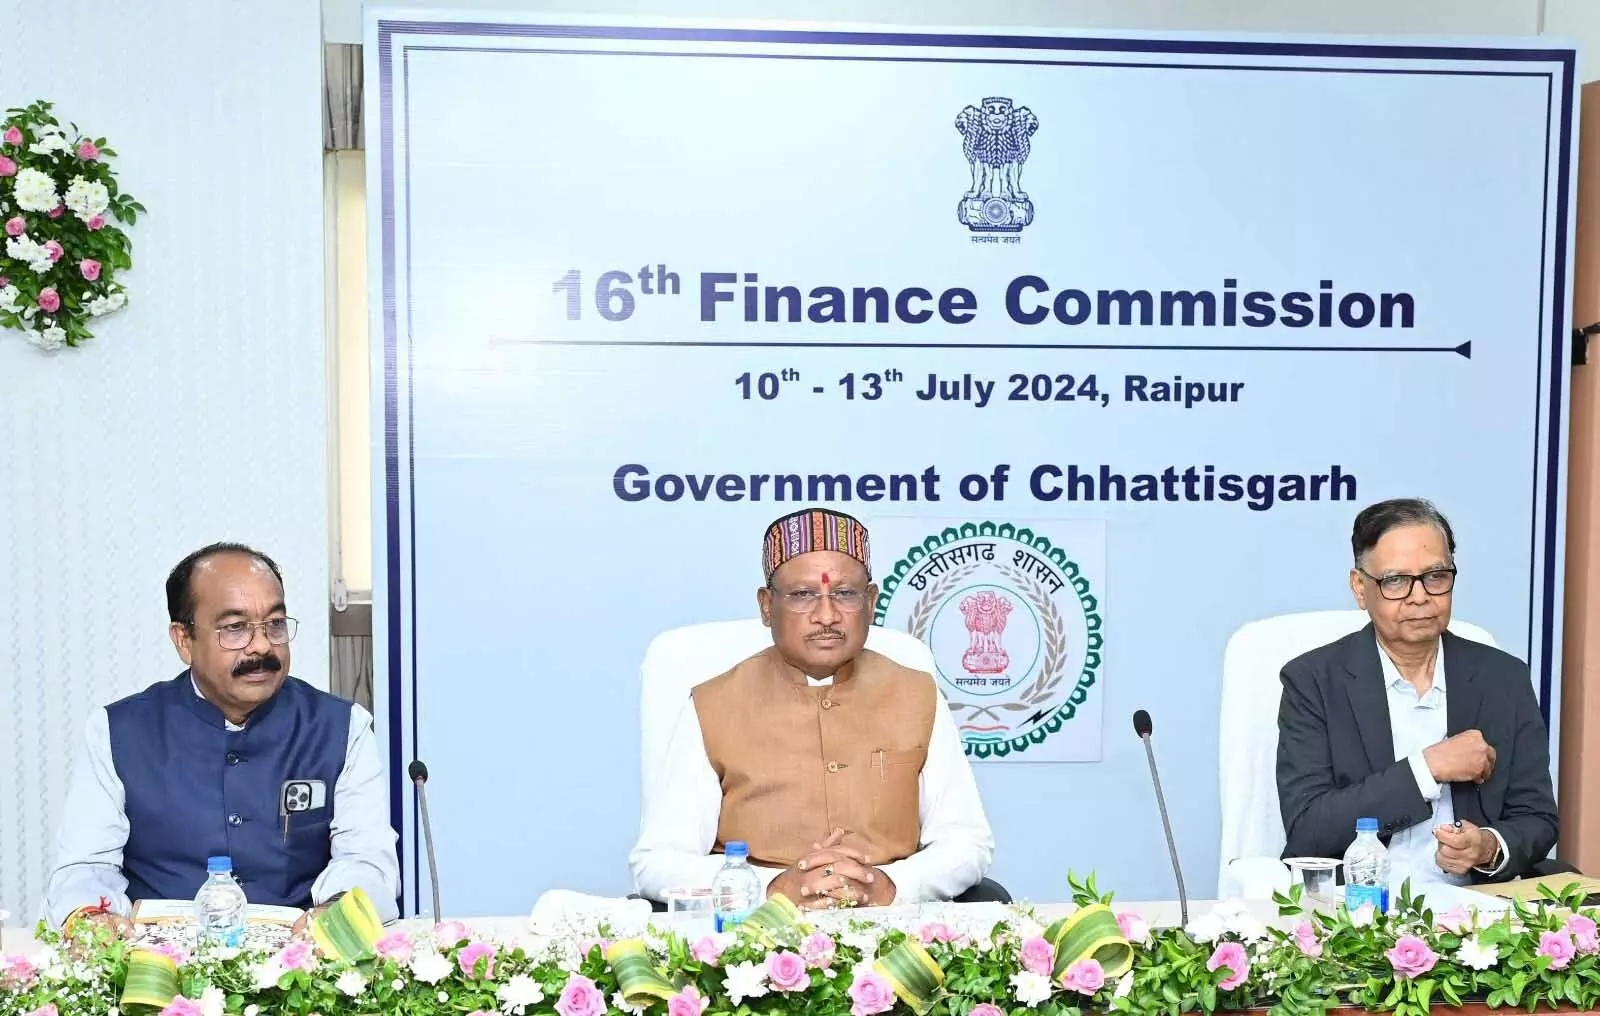 केंद्रीय वित्त आयोग की बैठक, मुख्य सचिव अमिताभ जैन राज्य के संबंध में दे रहे प्रजेंटेशन